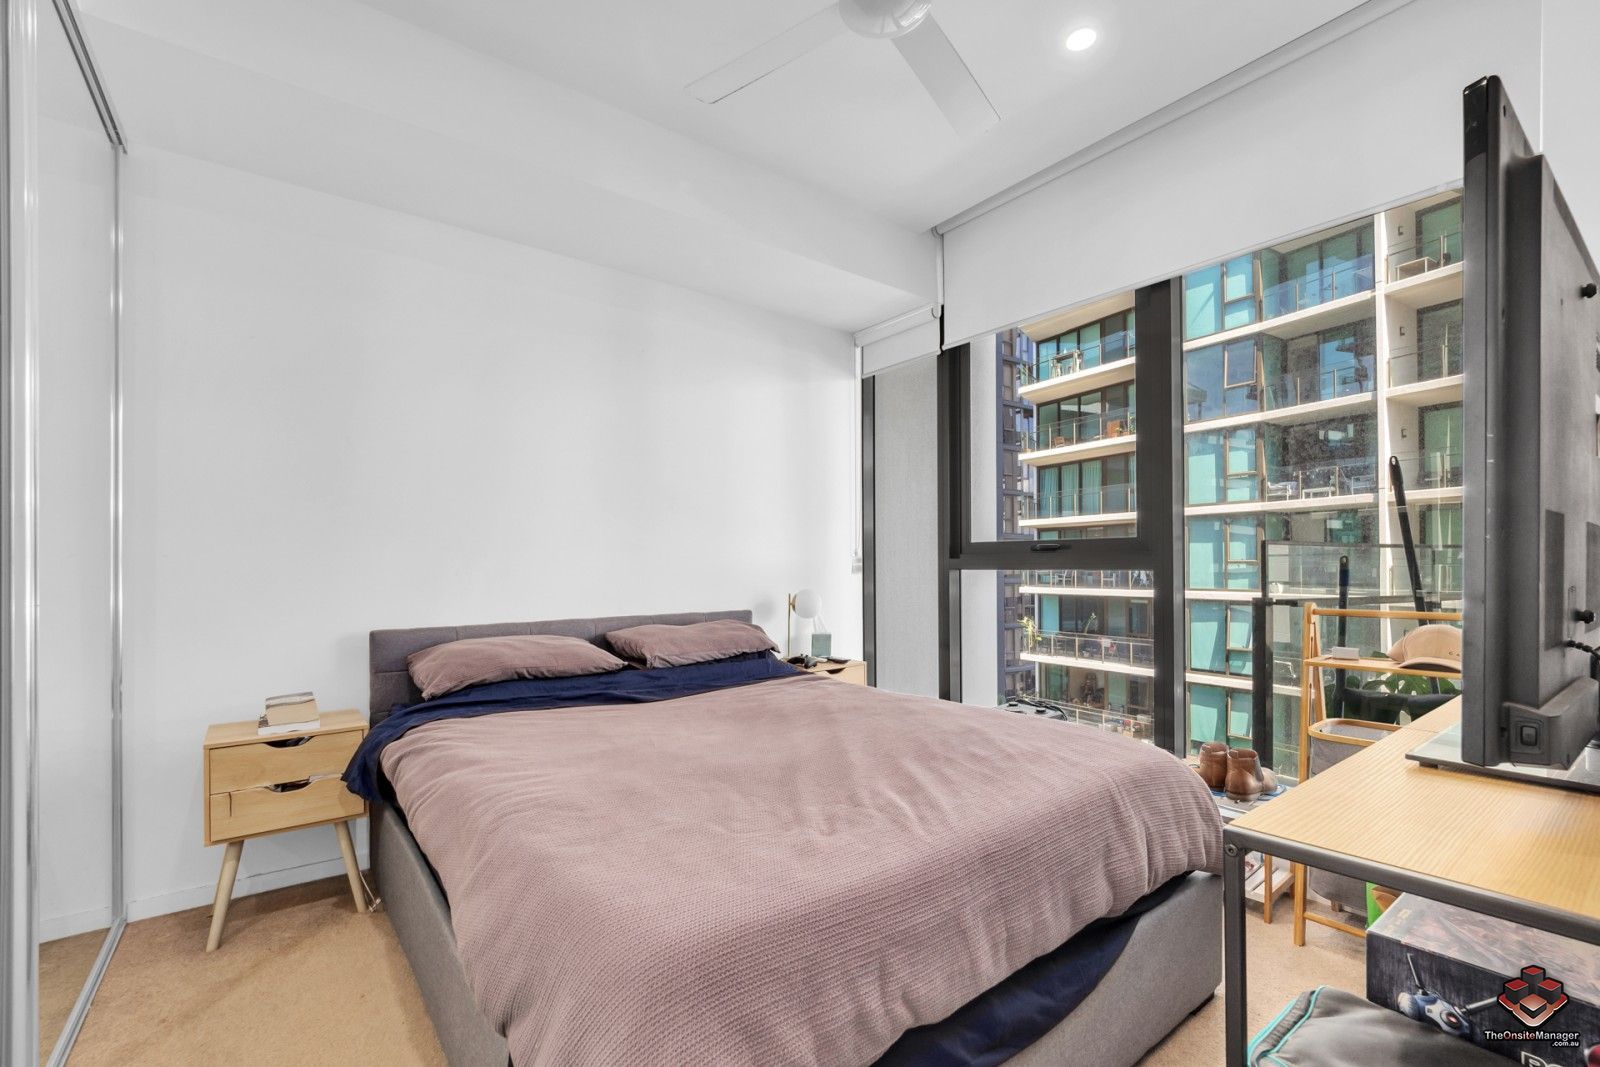 2 bedrooms Apartment / Unit / Flat in ID:21130301/24 Stratton Street NEWSTEAD QLD, 4006